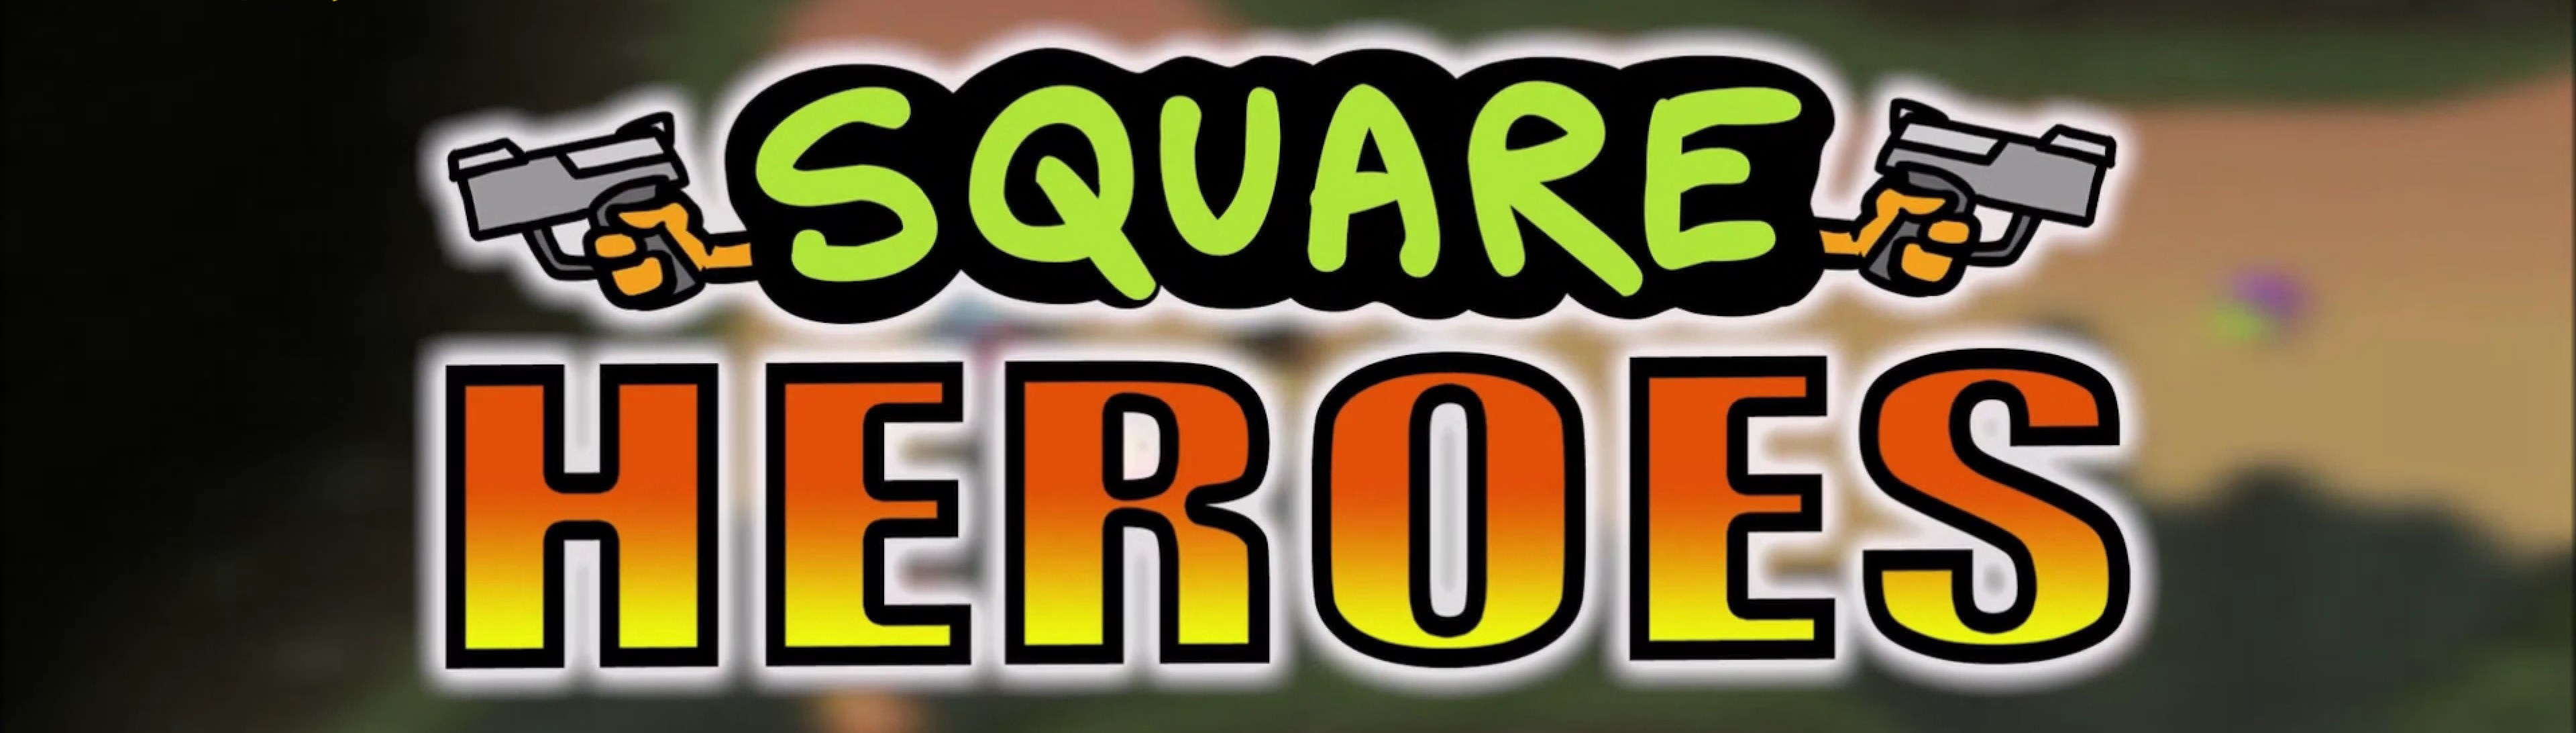 Square Heroes - Dernier Survivant